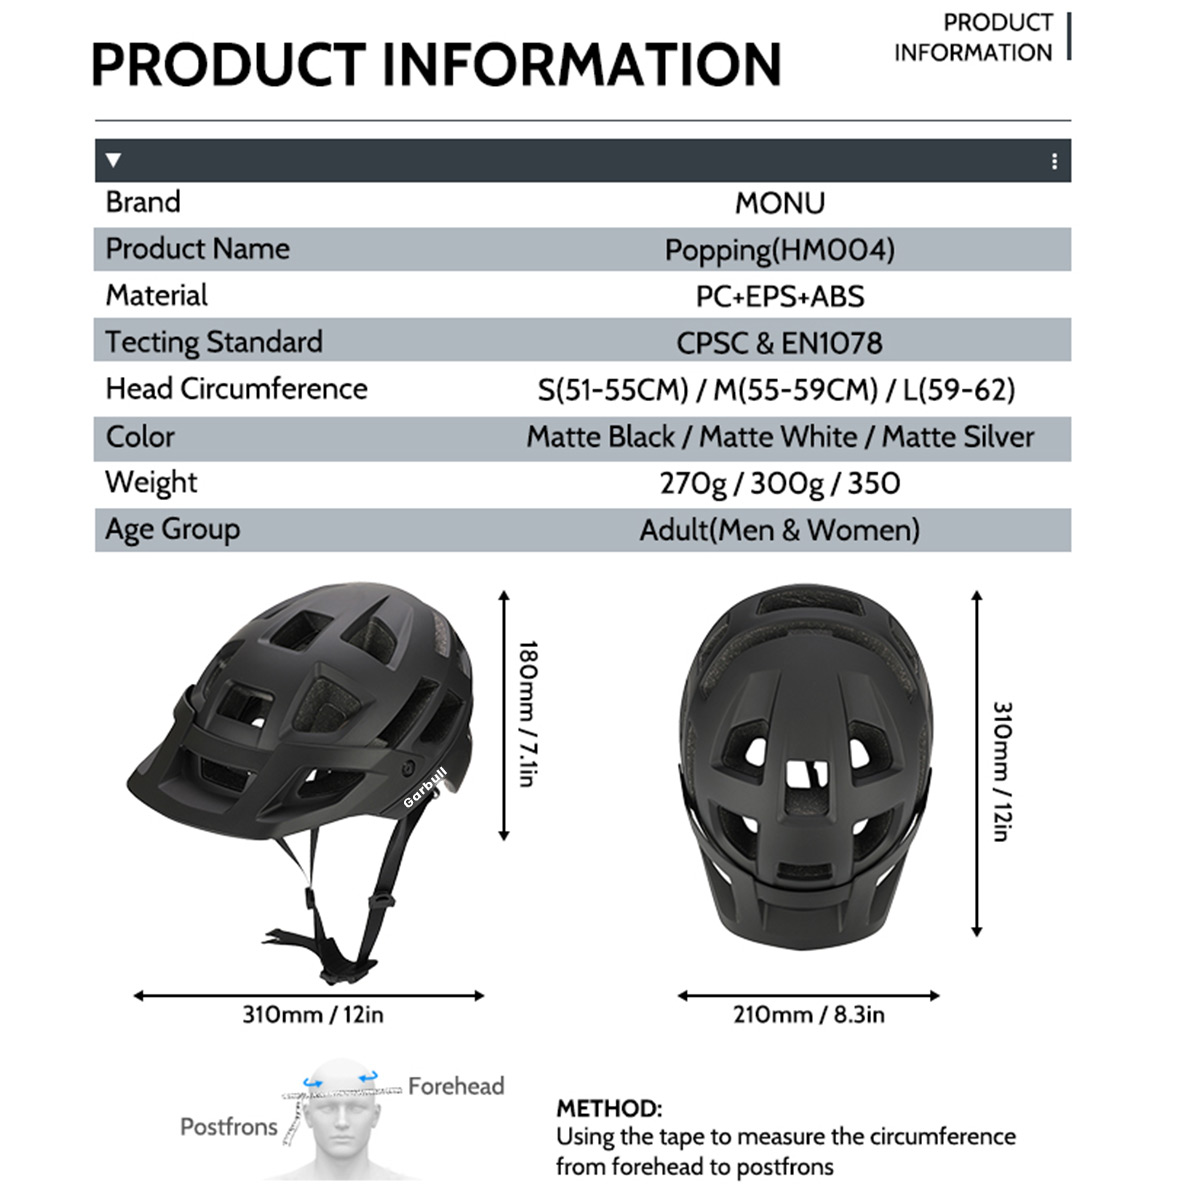 cm, cm 59-62 Helm schwarz) PROSCENIC Mountainbike,